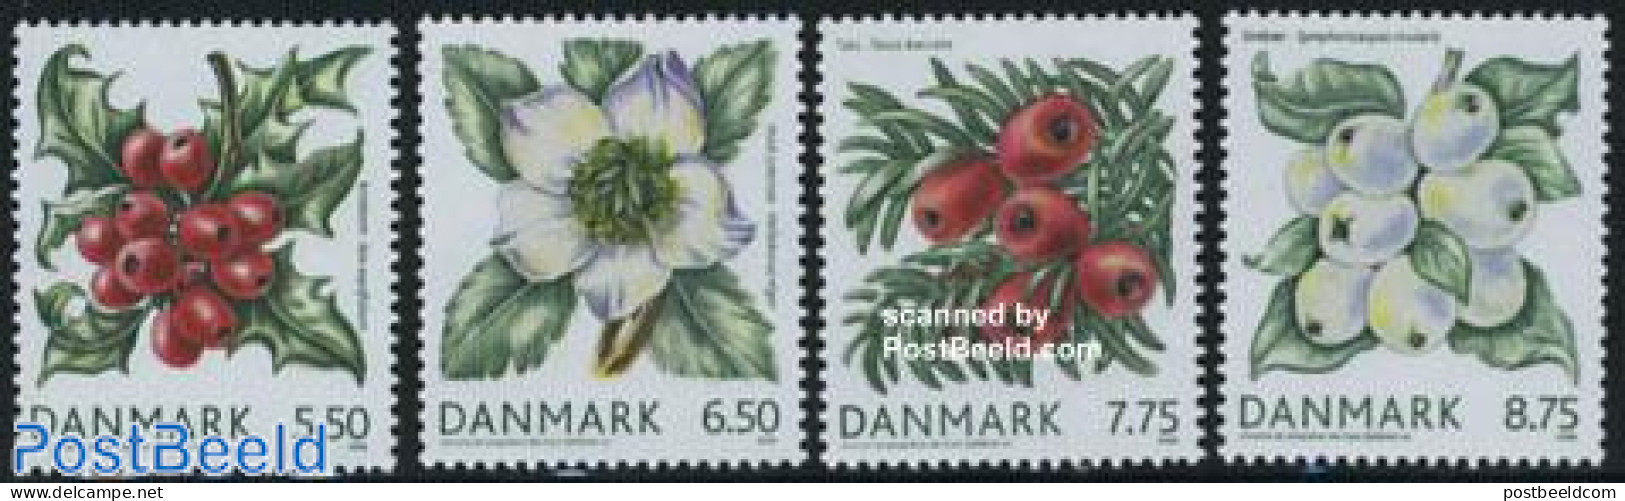 Denmark 2008 Berries 4v, Mint NH, Nature - Flowers & Plants - Fruit - Nuovi